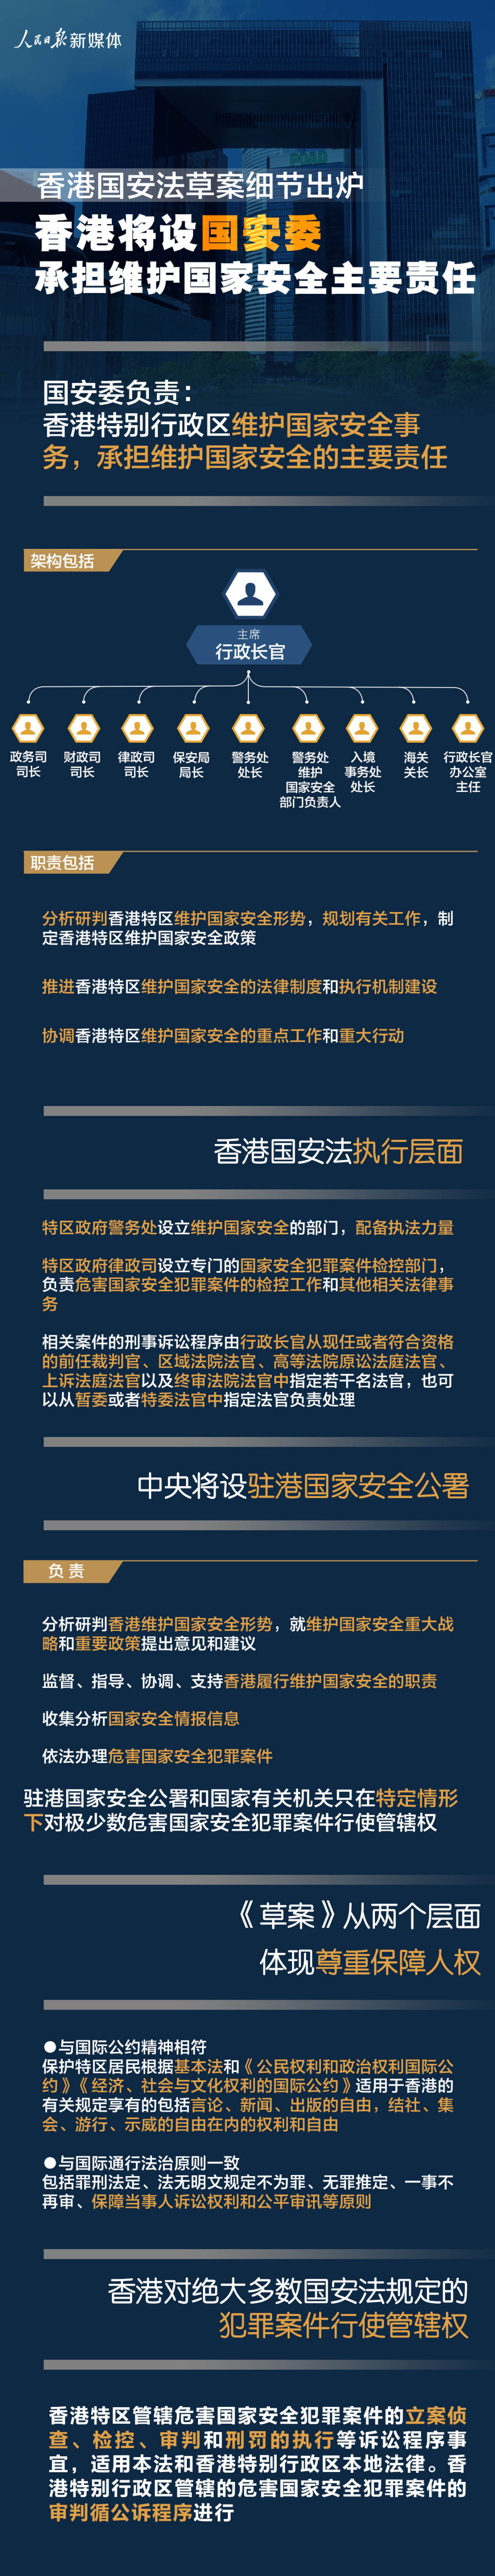 香港国安法草案一图概览